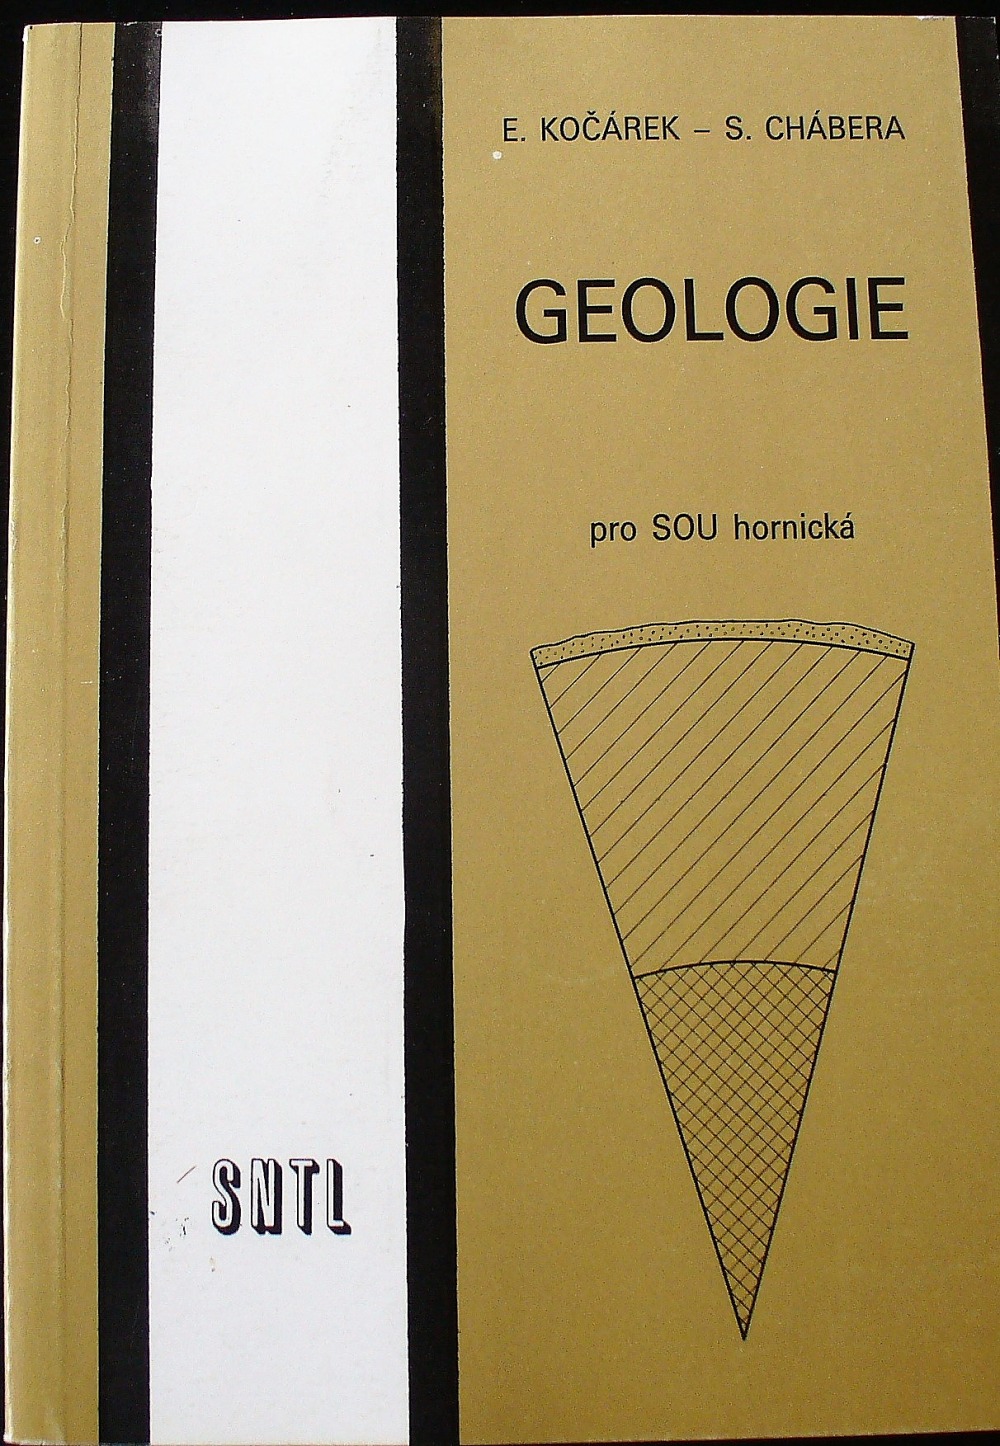 Geologie pro SOU hornická